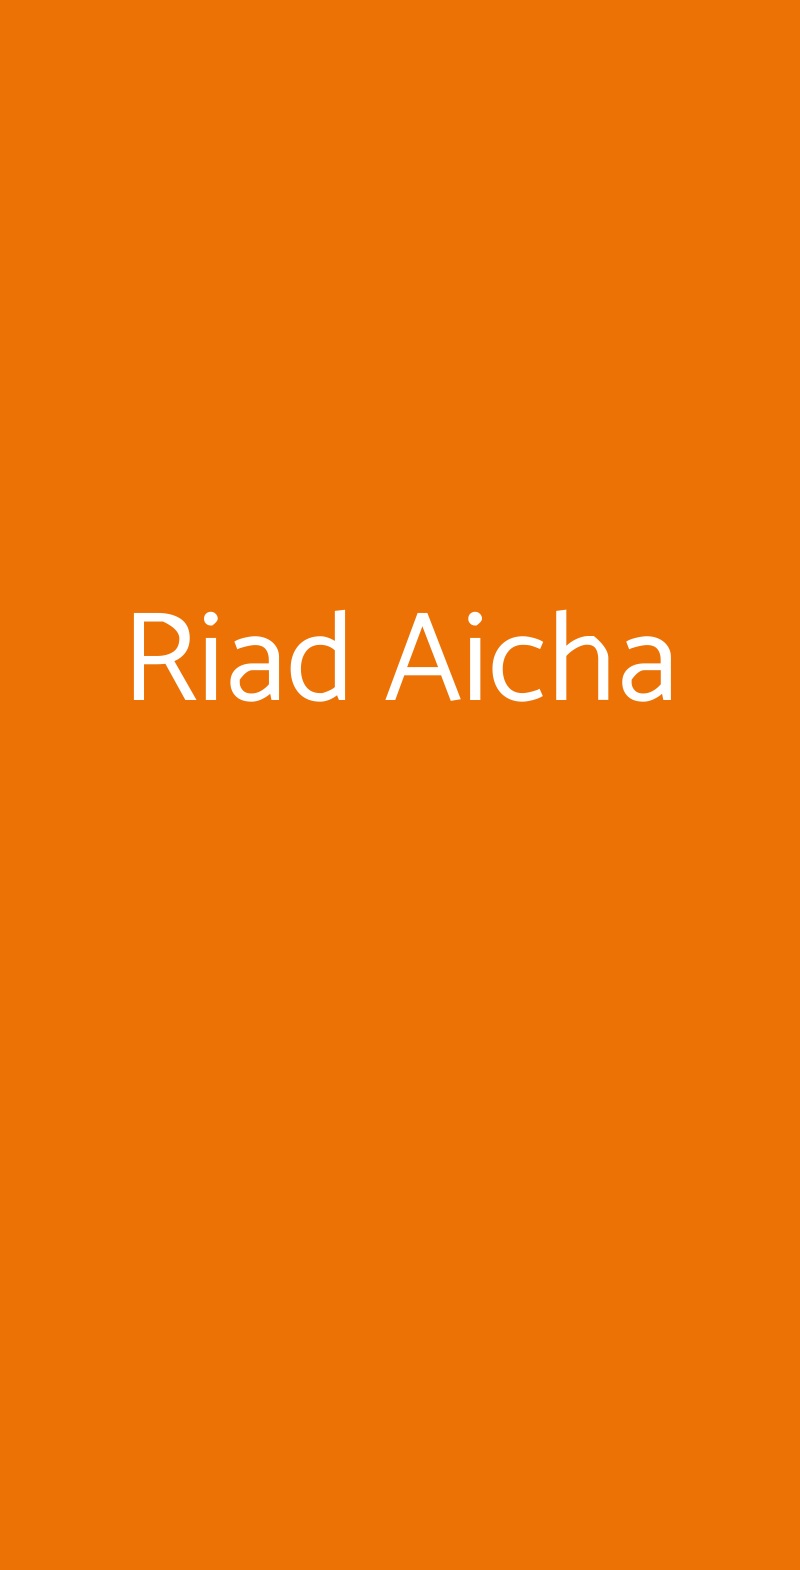 Riad Aicha Torino menù 1 pagina